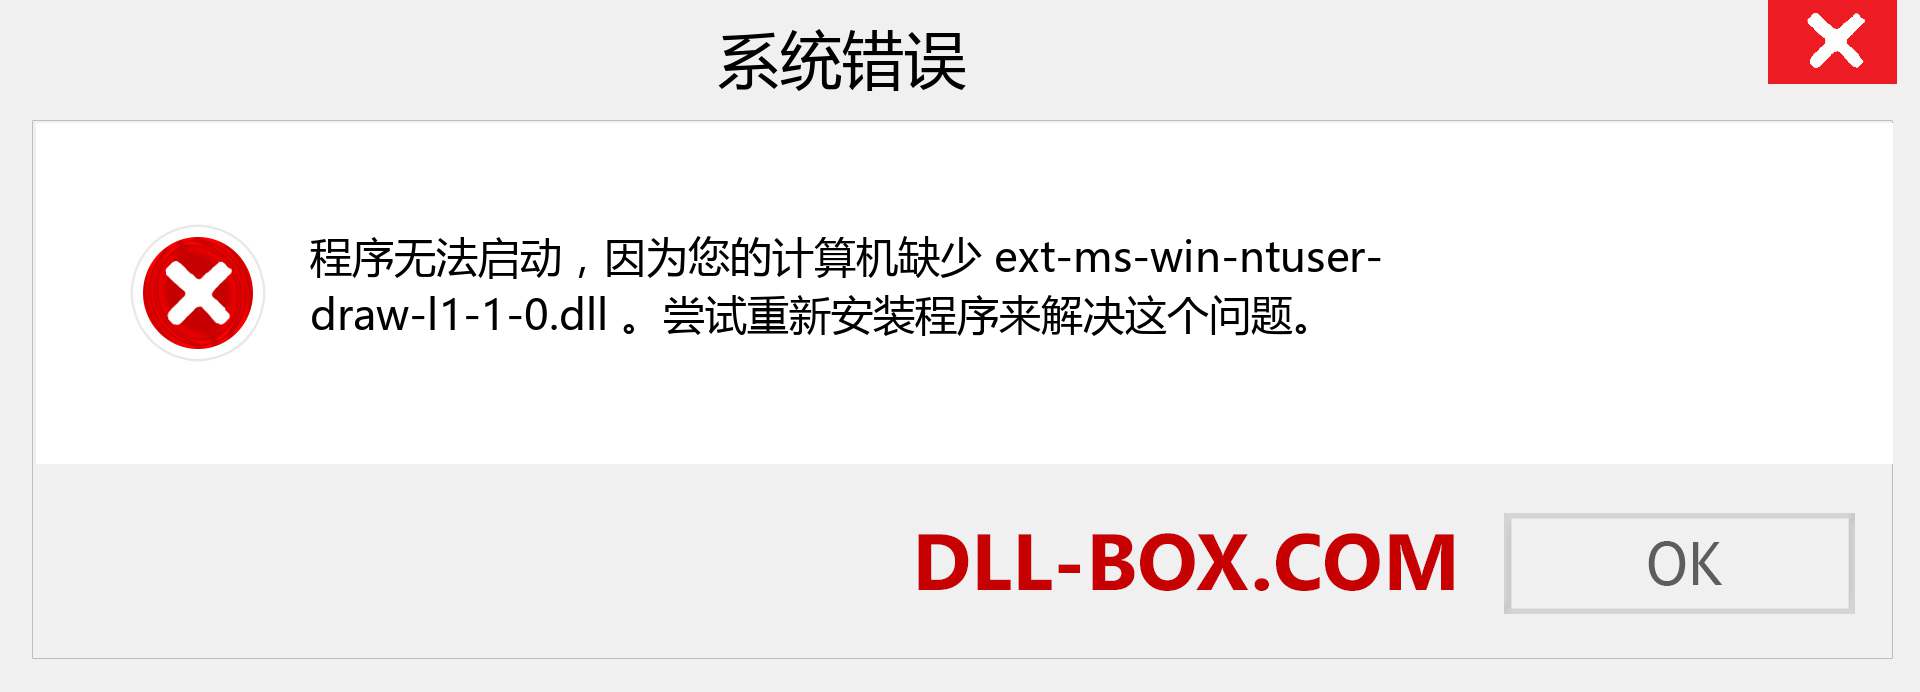 ext-ms-win-ntuser-draw-l1-1-0.dll 文件丢失？。 适用于 Windows 7、8、10 的下载 - 修复 Windows、照片、图像上的 ext-ms-win-ntuser-draw-l1-1-0 dll 丢失错误